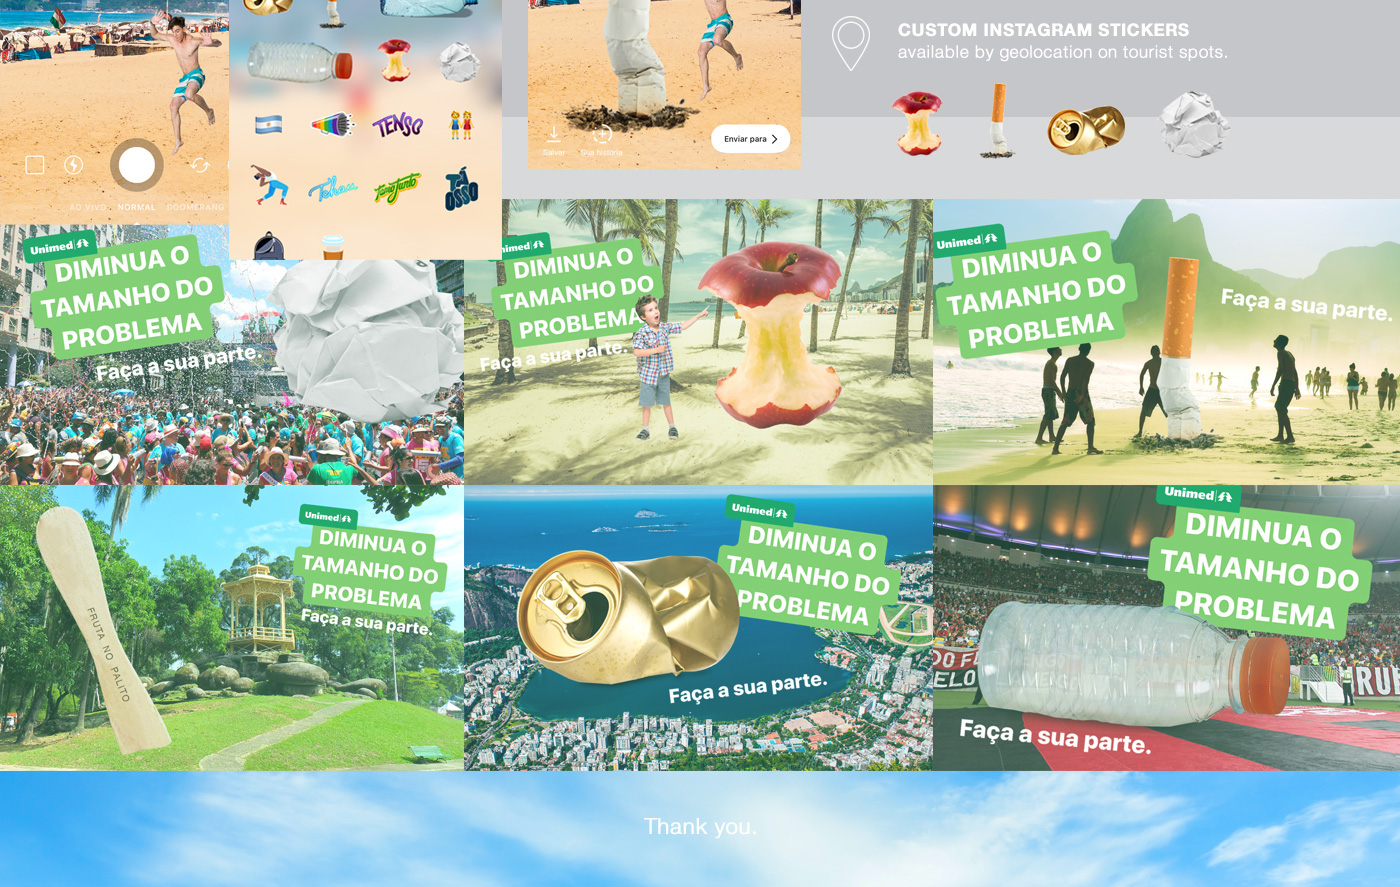 ativação activation live marketing app instagram Unimed digital stickers summer beach